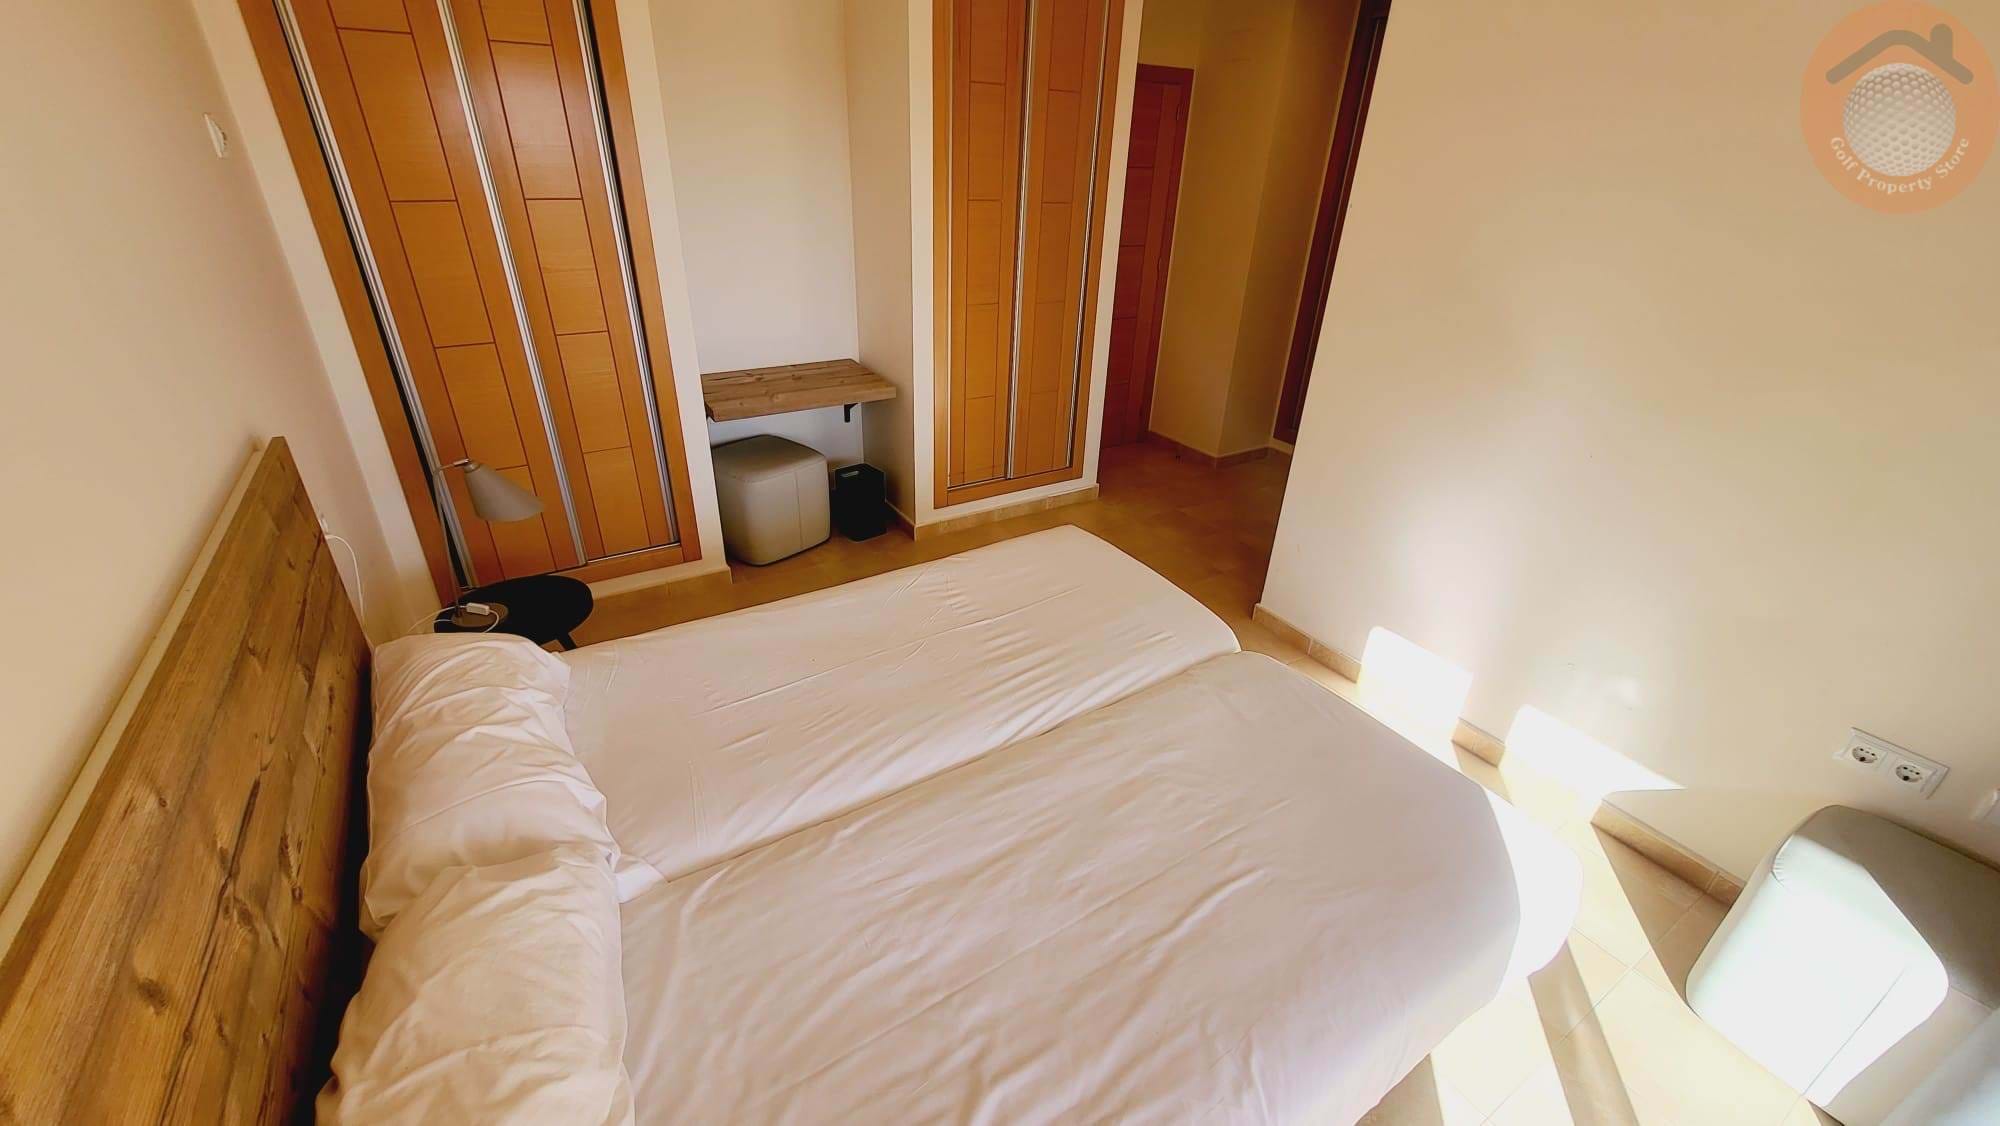 HACIENDA DEL ALAMO 2 BED 2 BATH APARTMENT WITH PRIVATE PLUNGE POOL